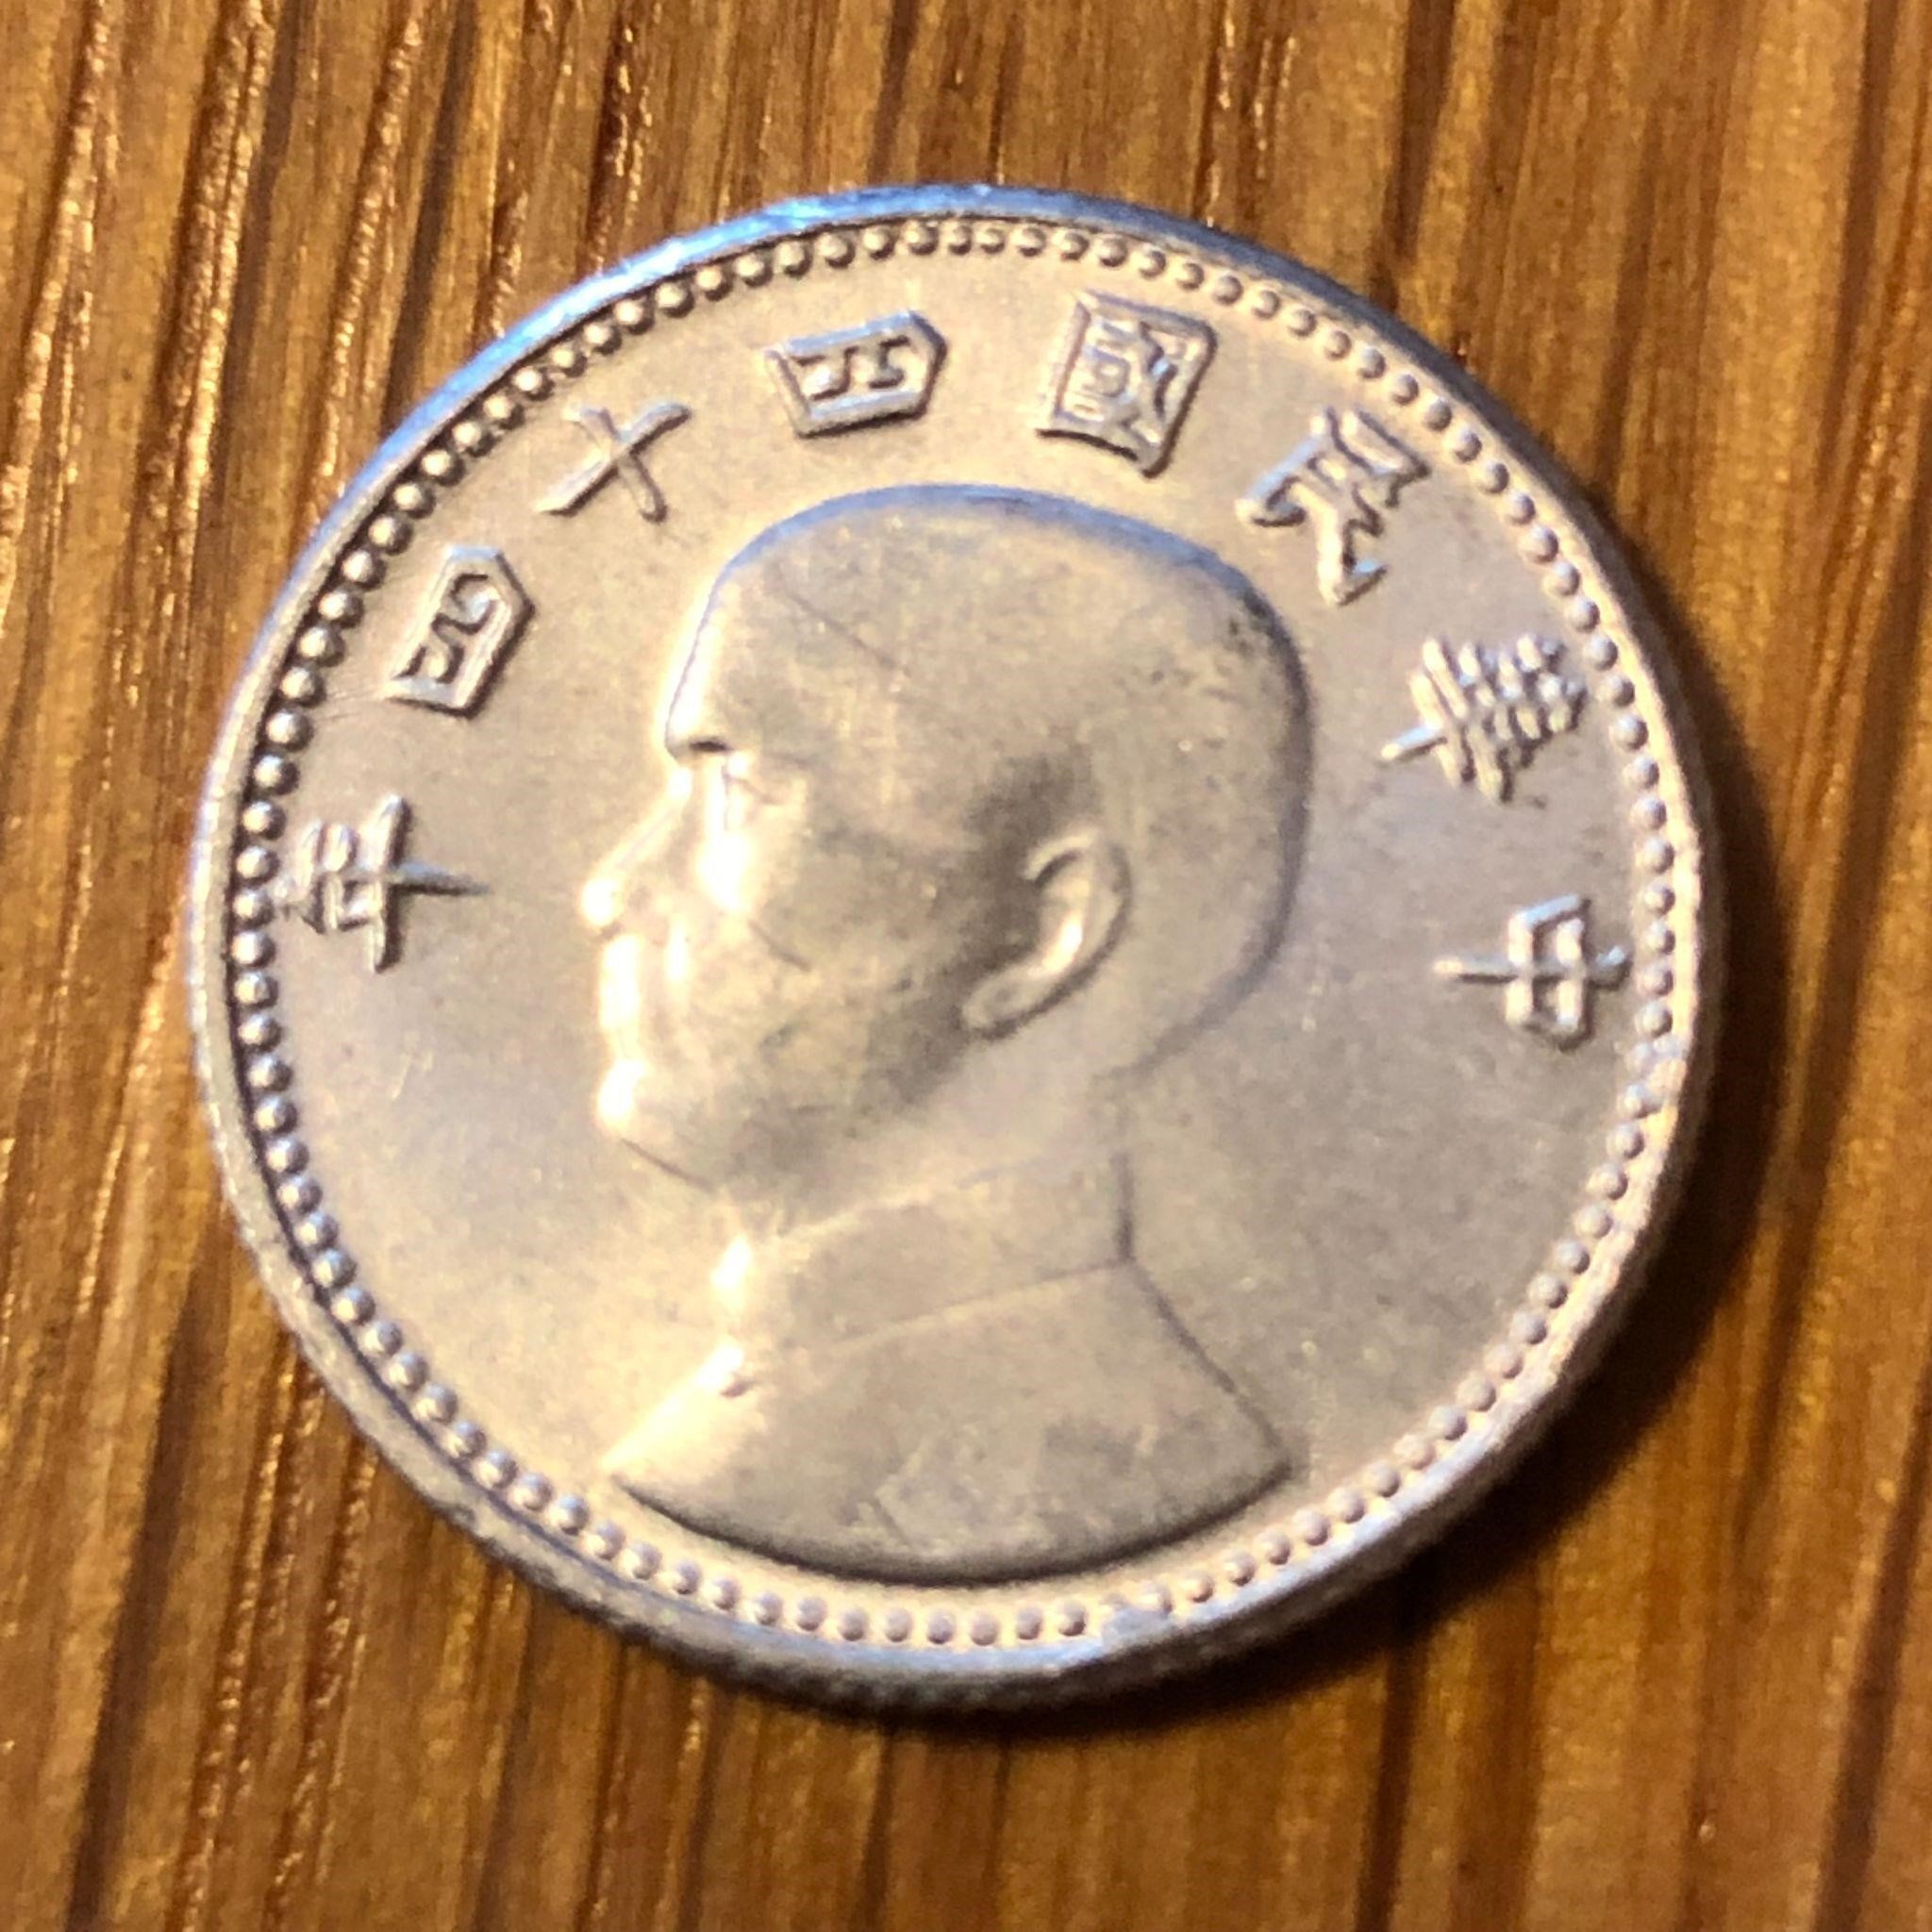 Taiwan Coin